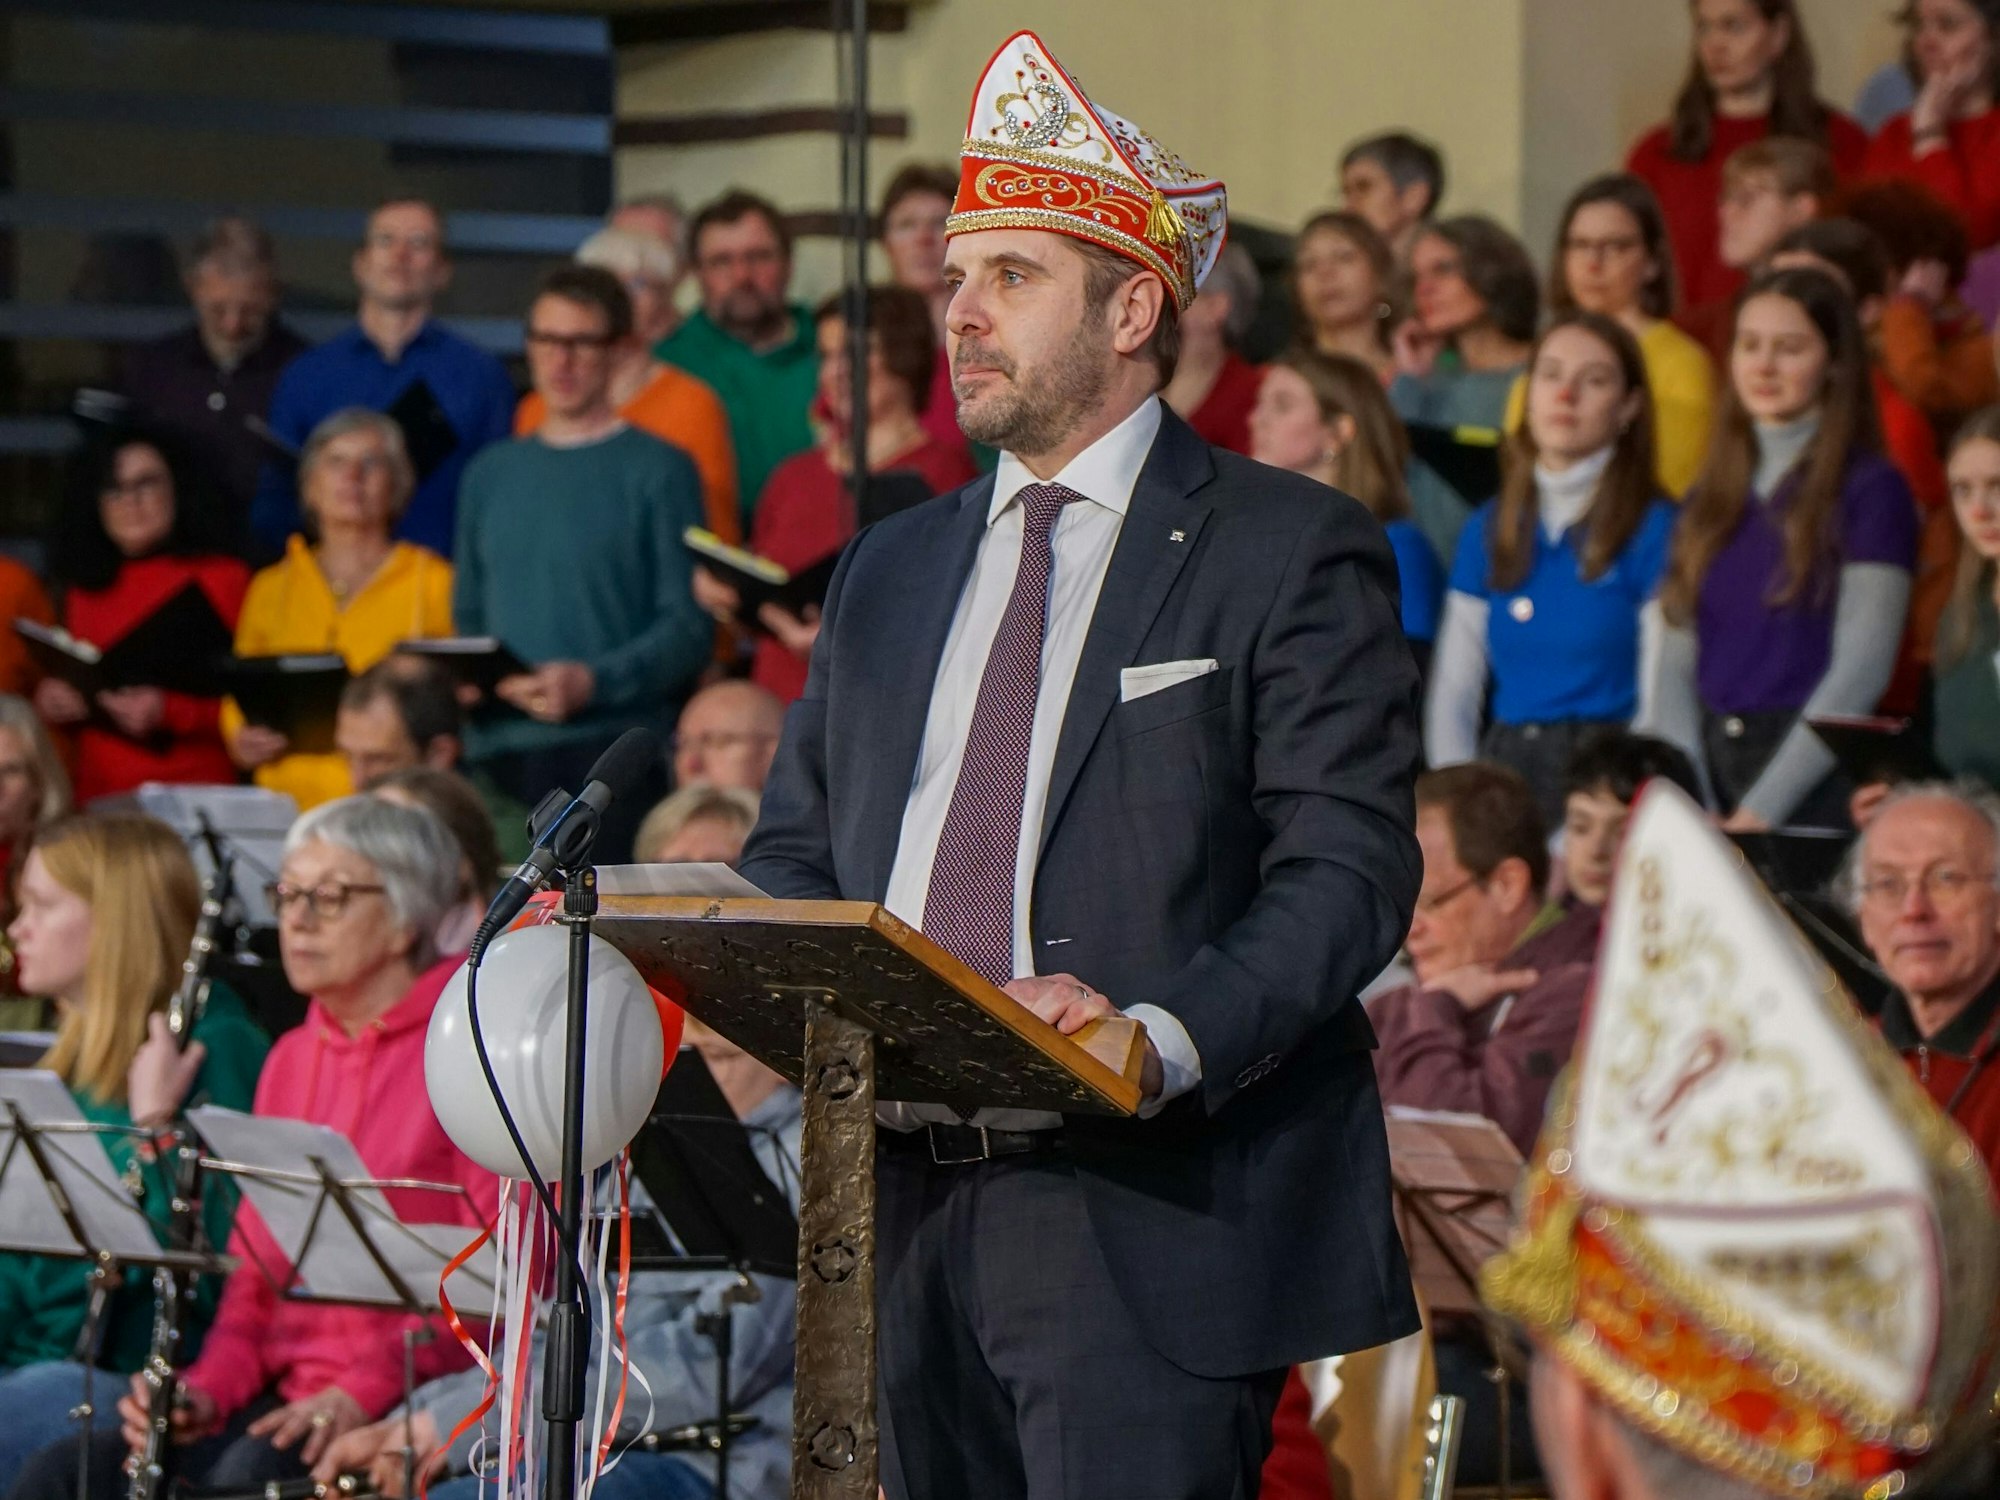 Ein Mann im Anzug mit Narrenkappe auf dem Kopf, steht an einem Rednerpult, hinter ihm sind Musiker und Chormitglieder zu sehen.